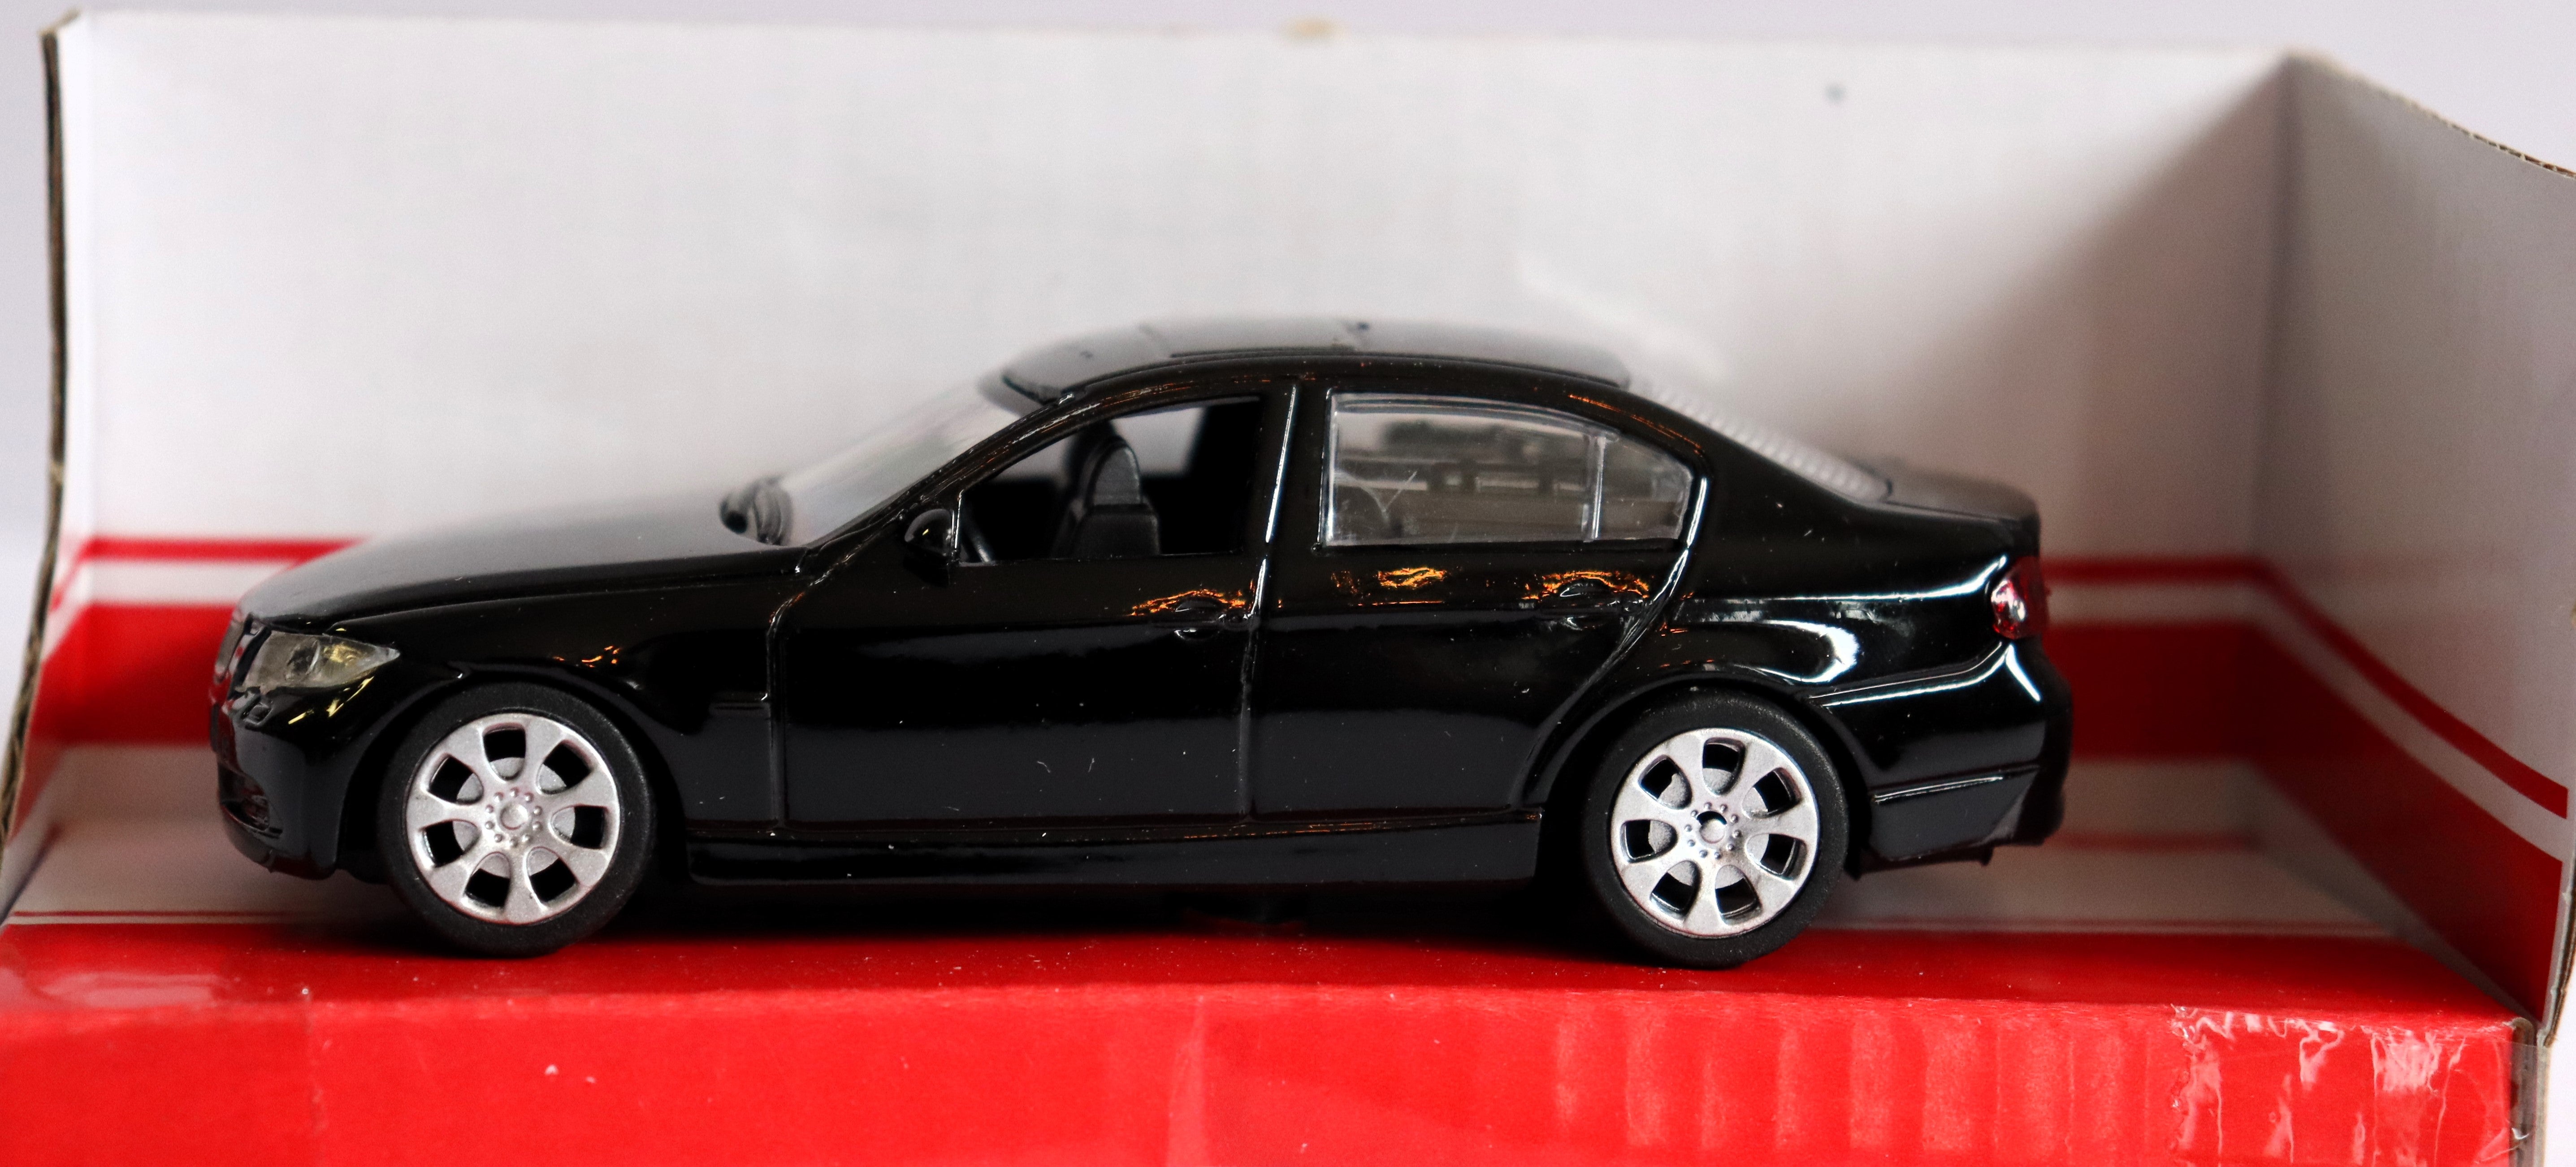 BMW (Black) 1/48 Diecast Car